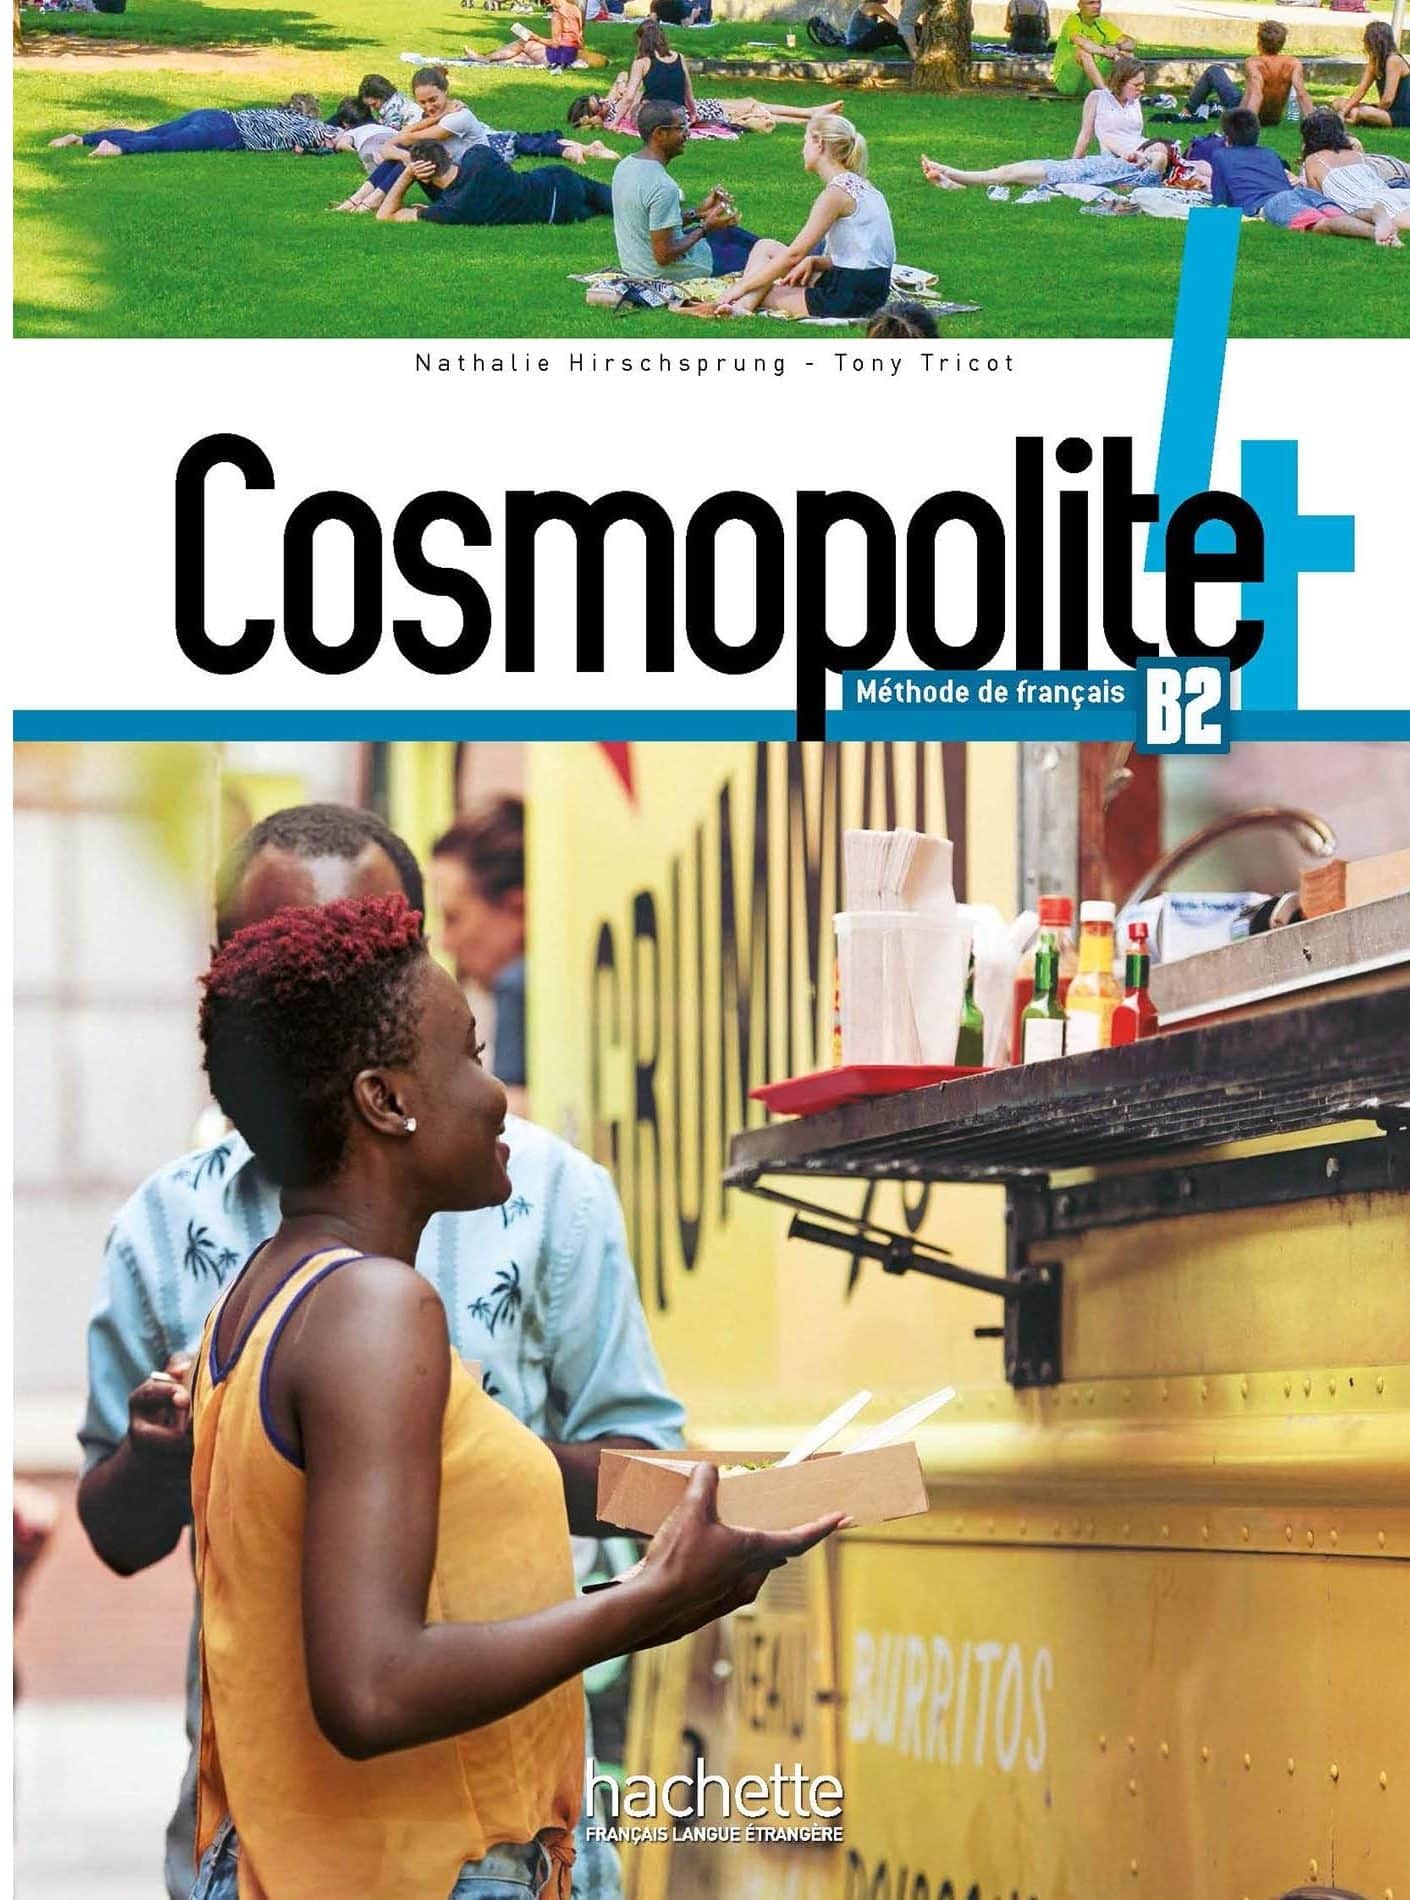 COSMOPOLITE 4 : udžbenik za francuski jezik, 4. razred gimnazije, dvojezičari, 1. strani jezik (napredno učenje) autora Nathalie Hirschsprung, Tony Tricot